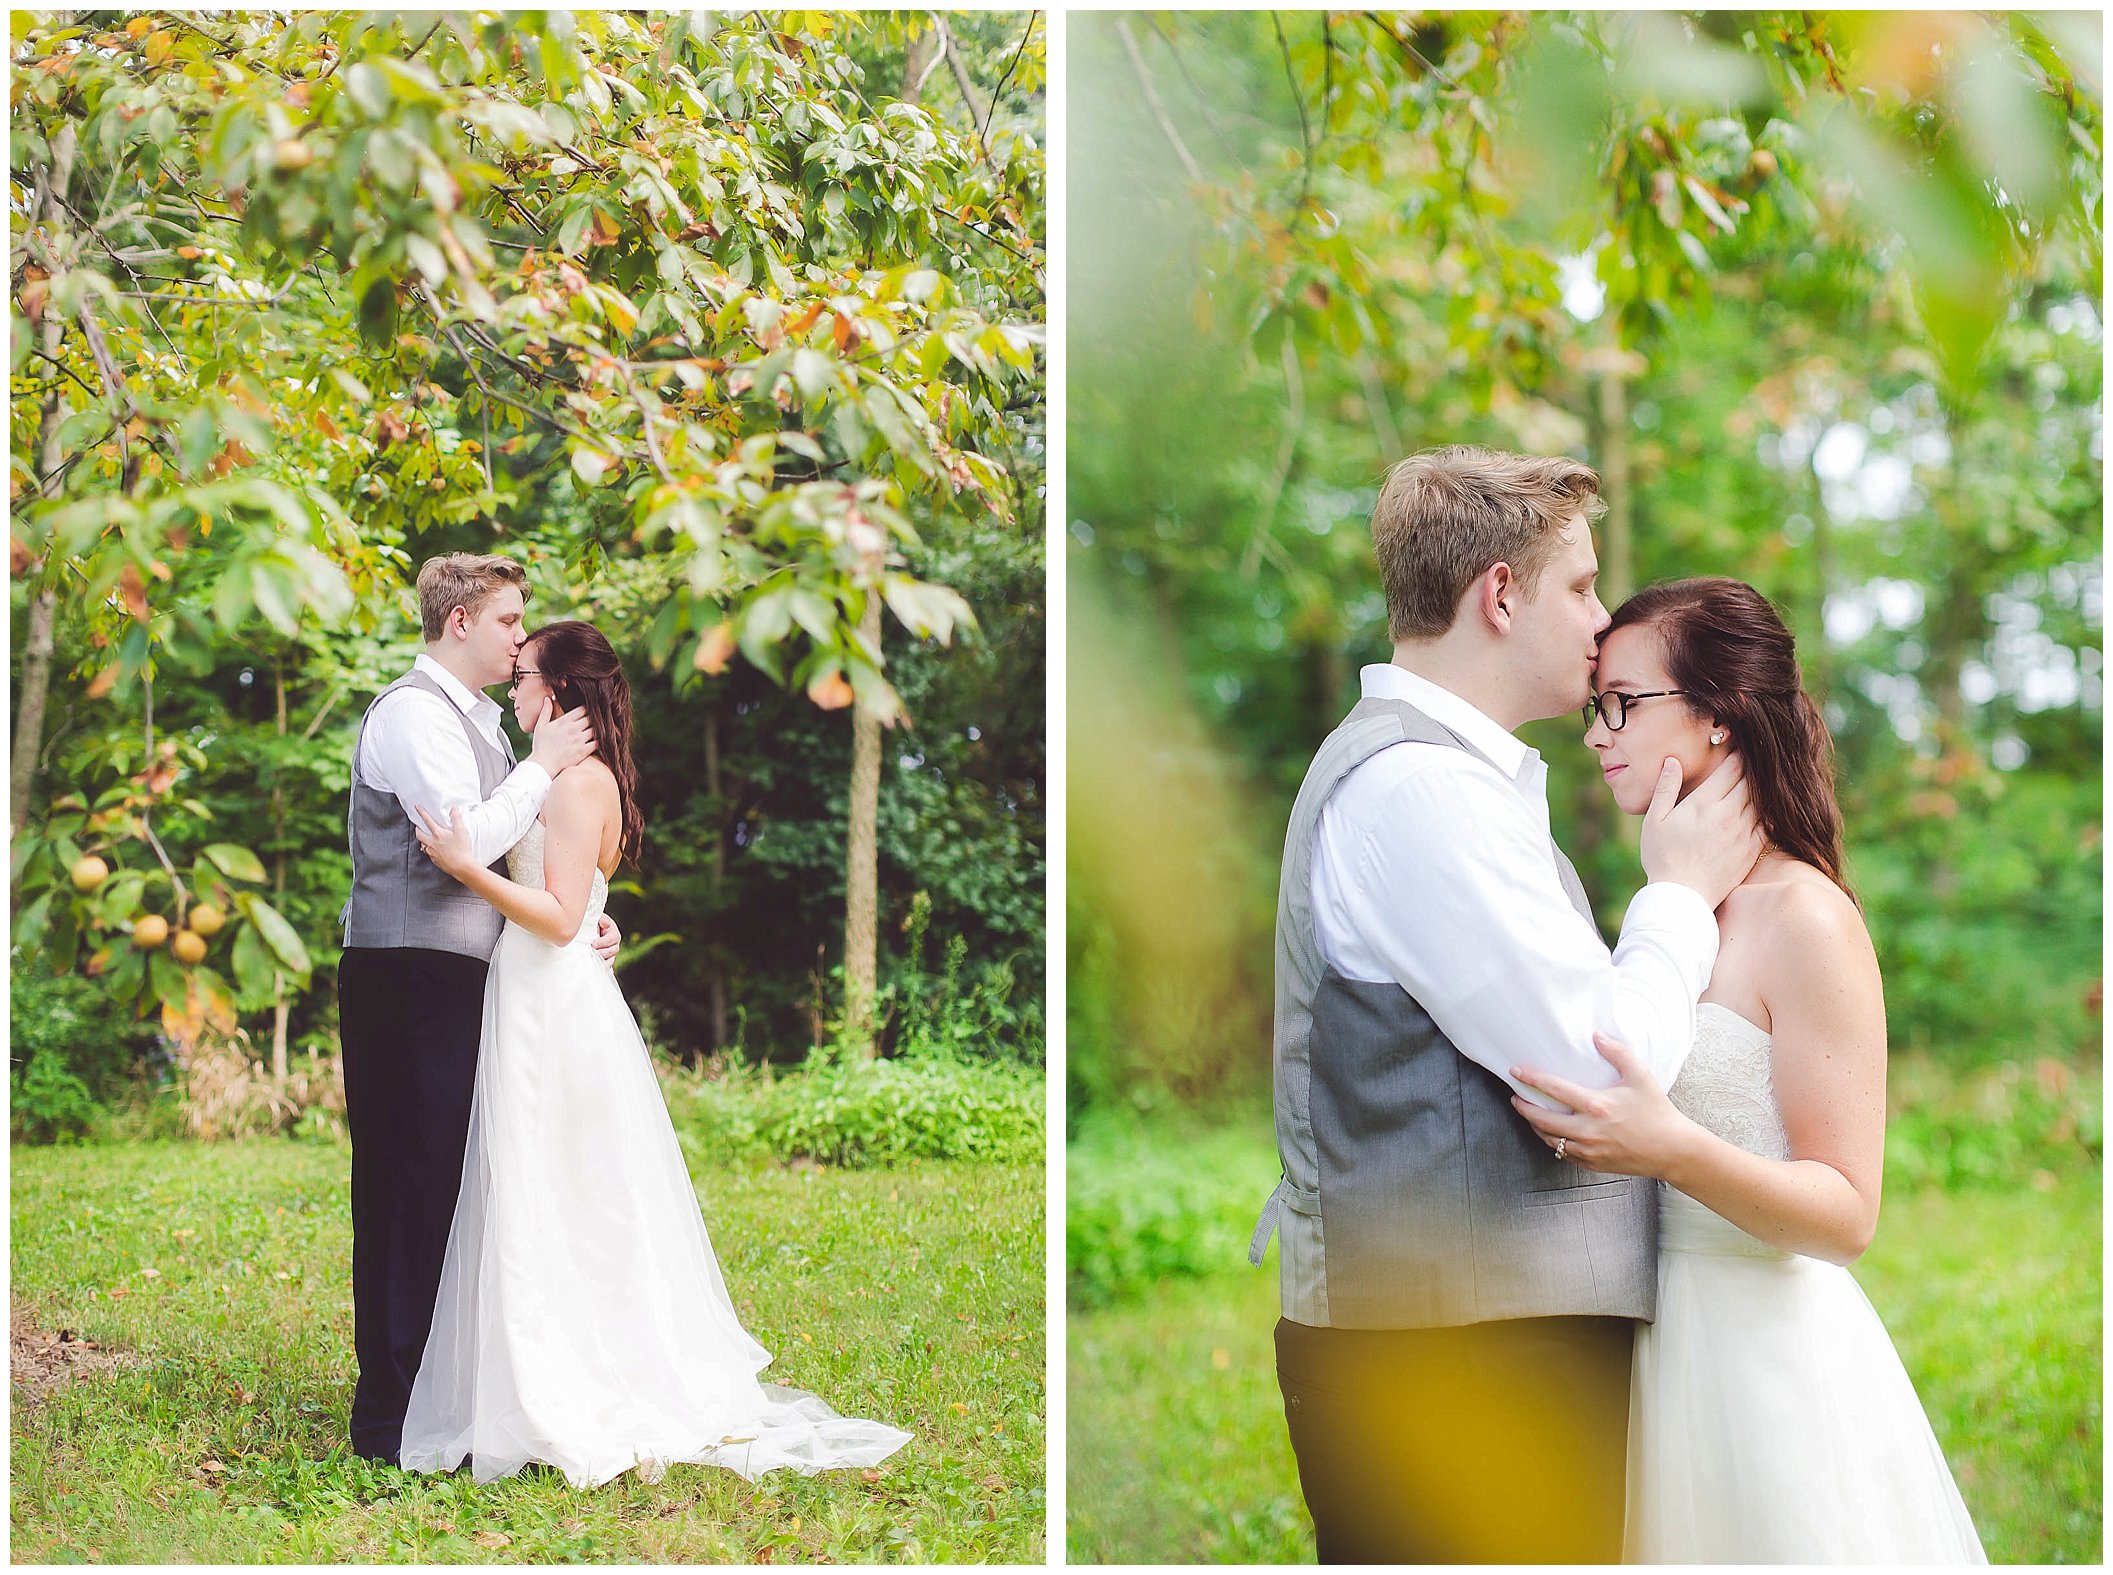 Stunning backyard wedding with twinkly lights, Fort Wayne Indiana Wedding Photographer_0035.jpg